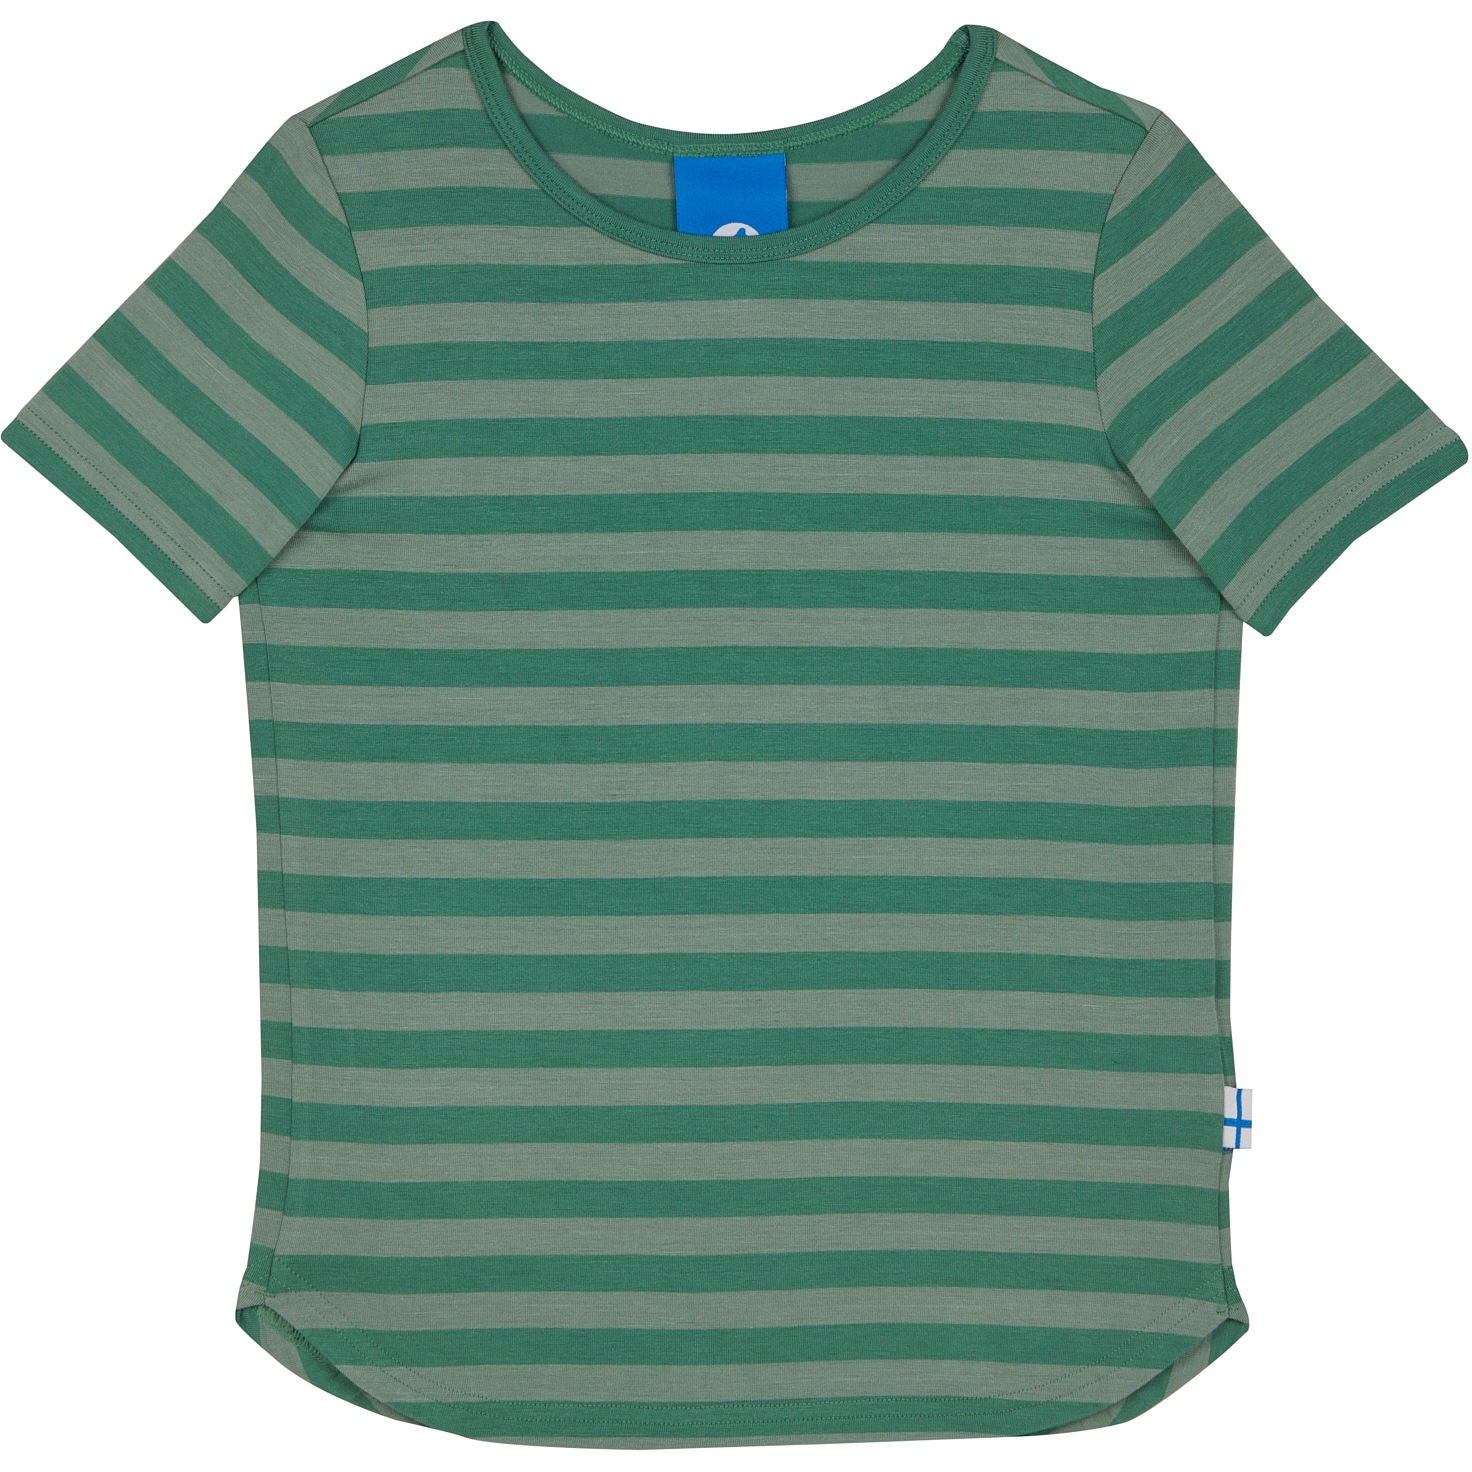 Produktbild von Finkid MAALARI Jersey T-Shirt Kinder - green bay/deep grass